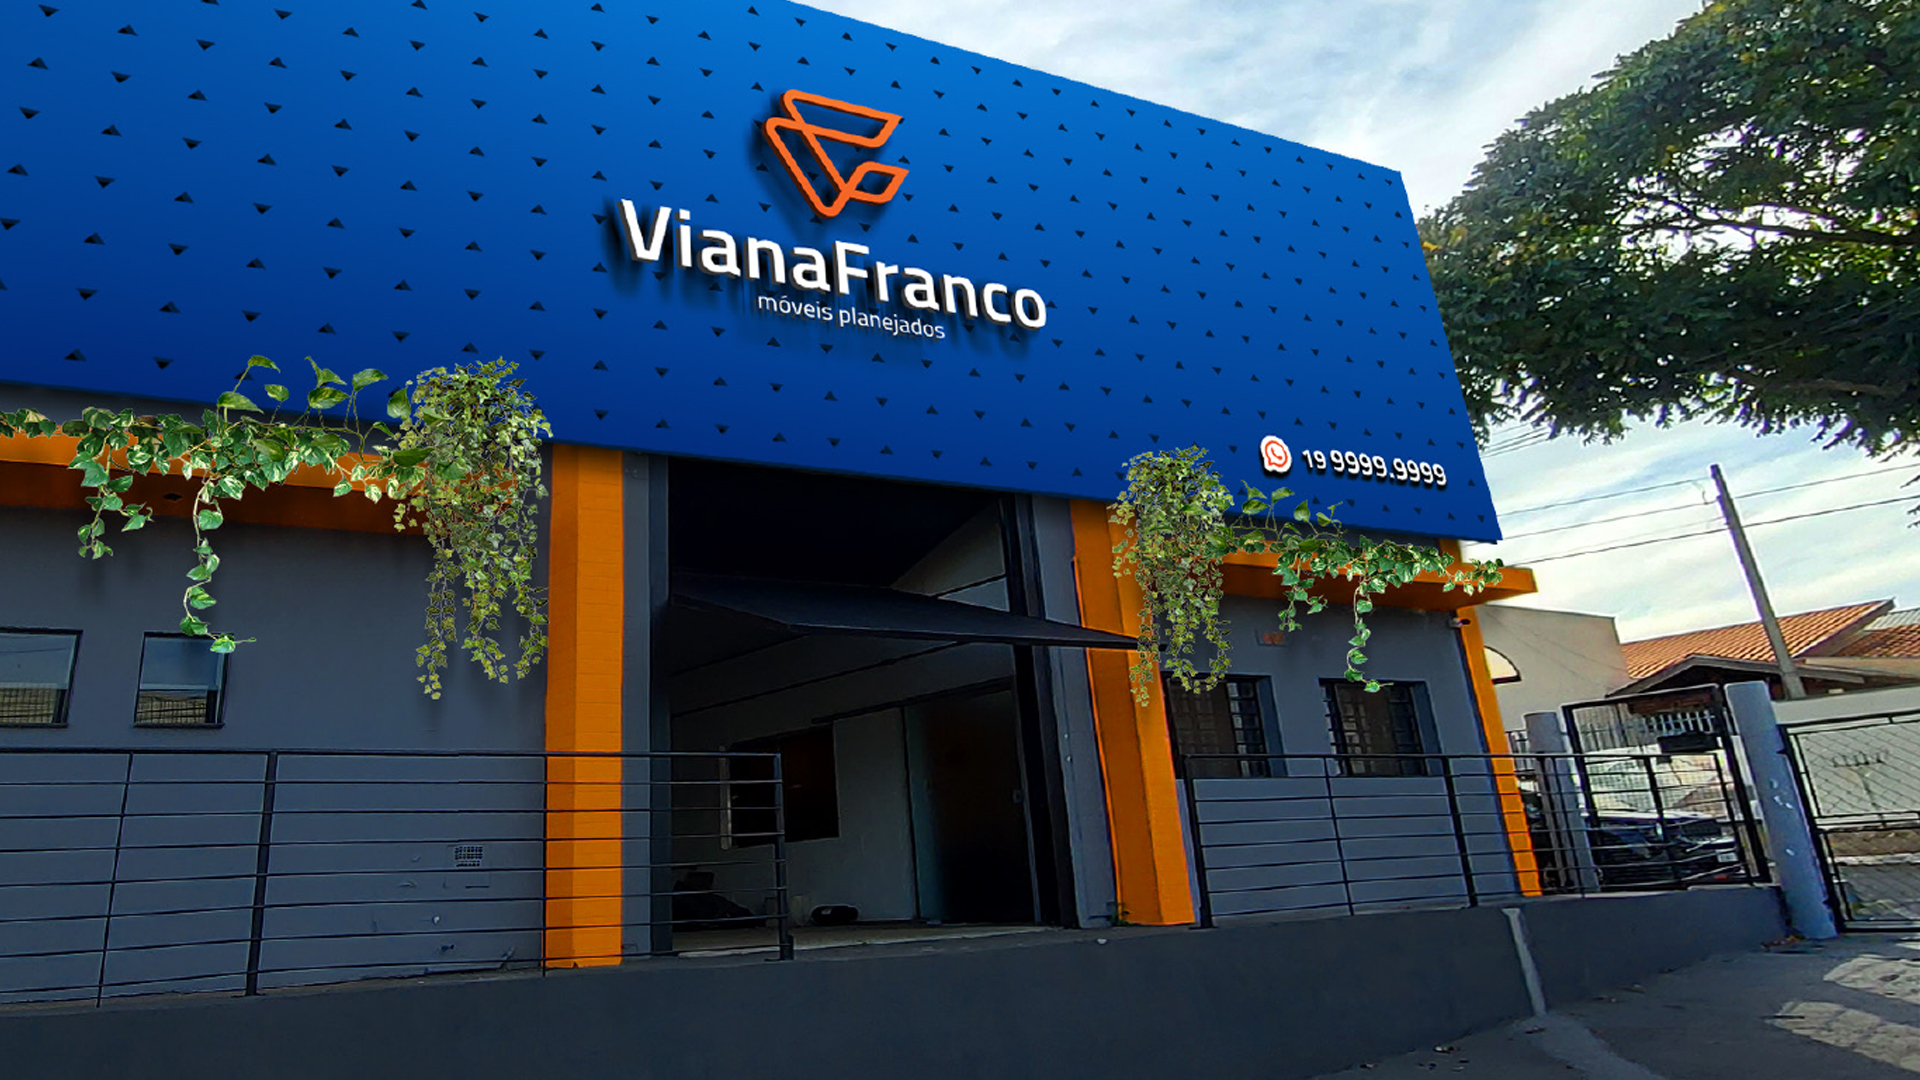 A parceria com a Viana Franco e o projeto de rebranding